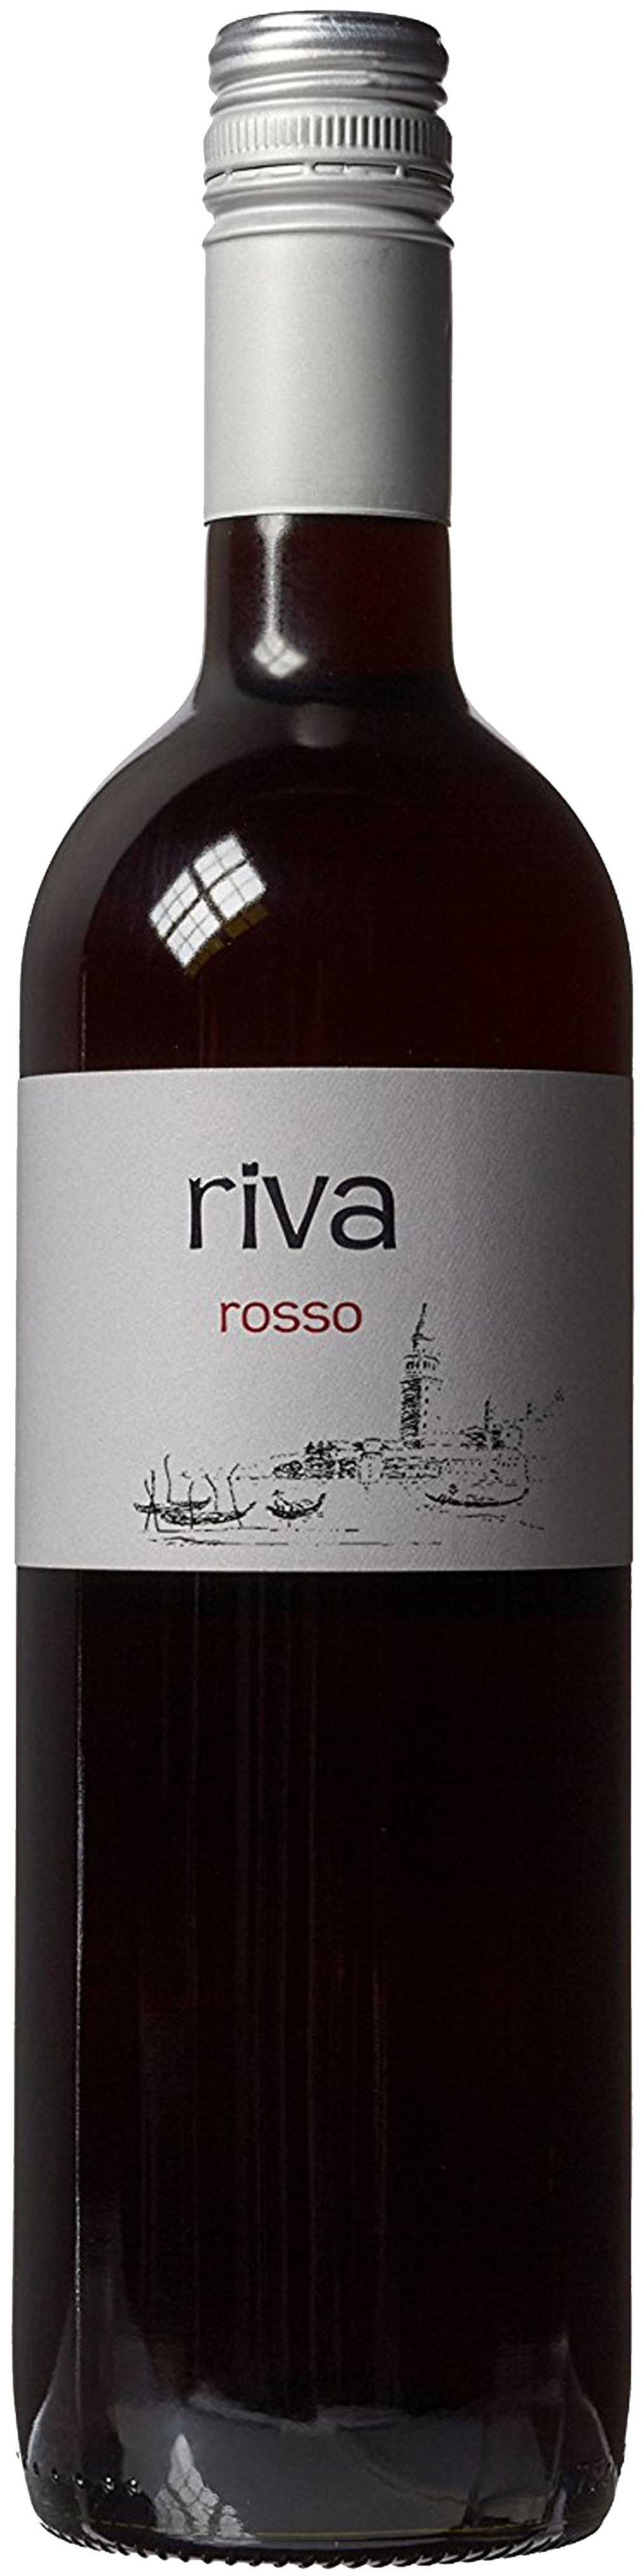 Bottle shot of 2014 Riva Rosso